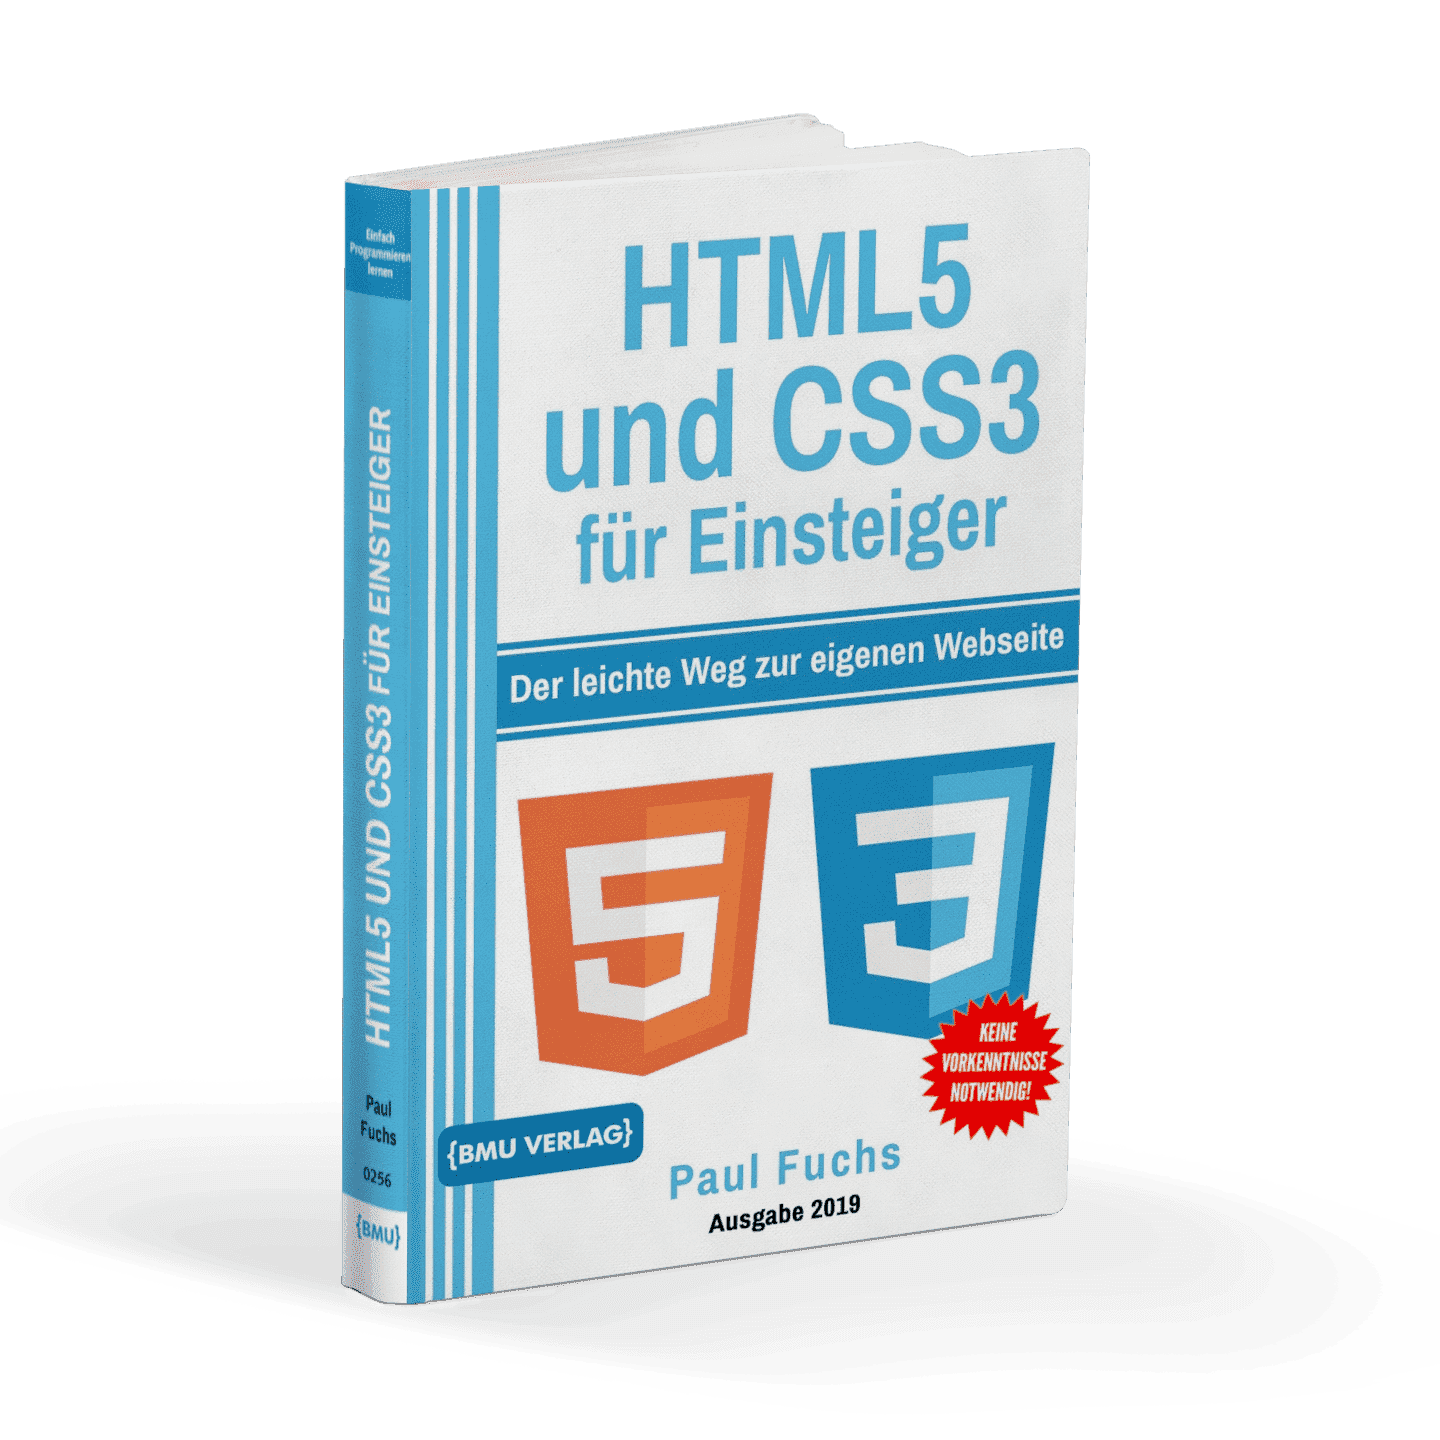 HTML5 und CSS3 für Einsteiger: Der leichte Weg zur eigenen Website - AZ-Delivery